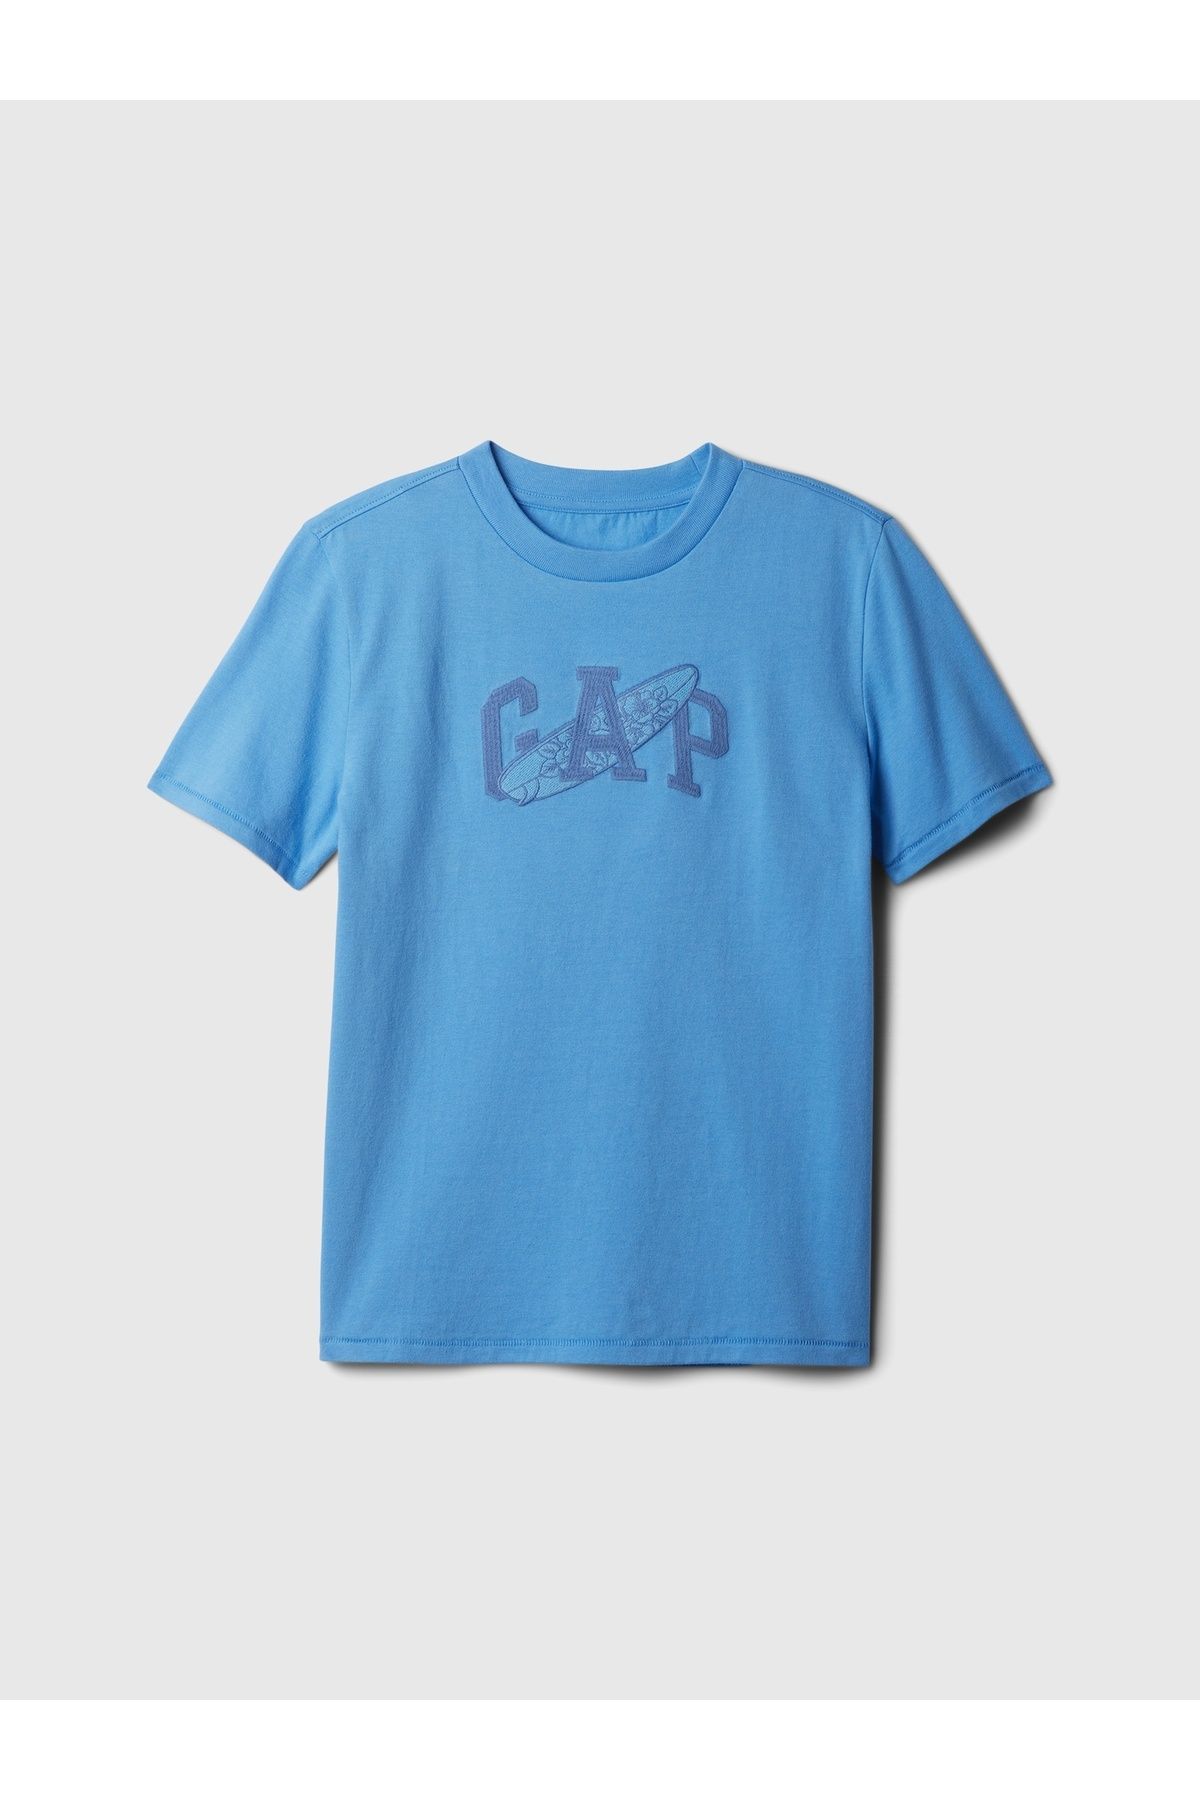 GAP Erkek Çocuk Mavi Gap Logo T-shirt